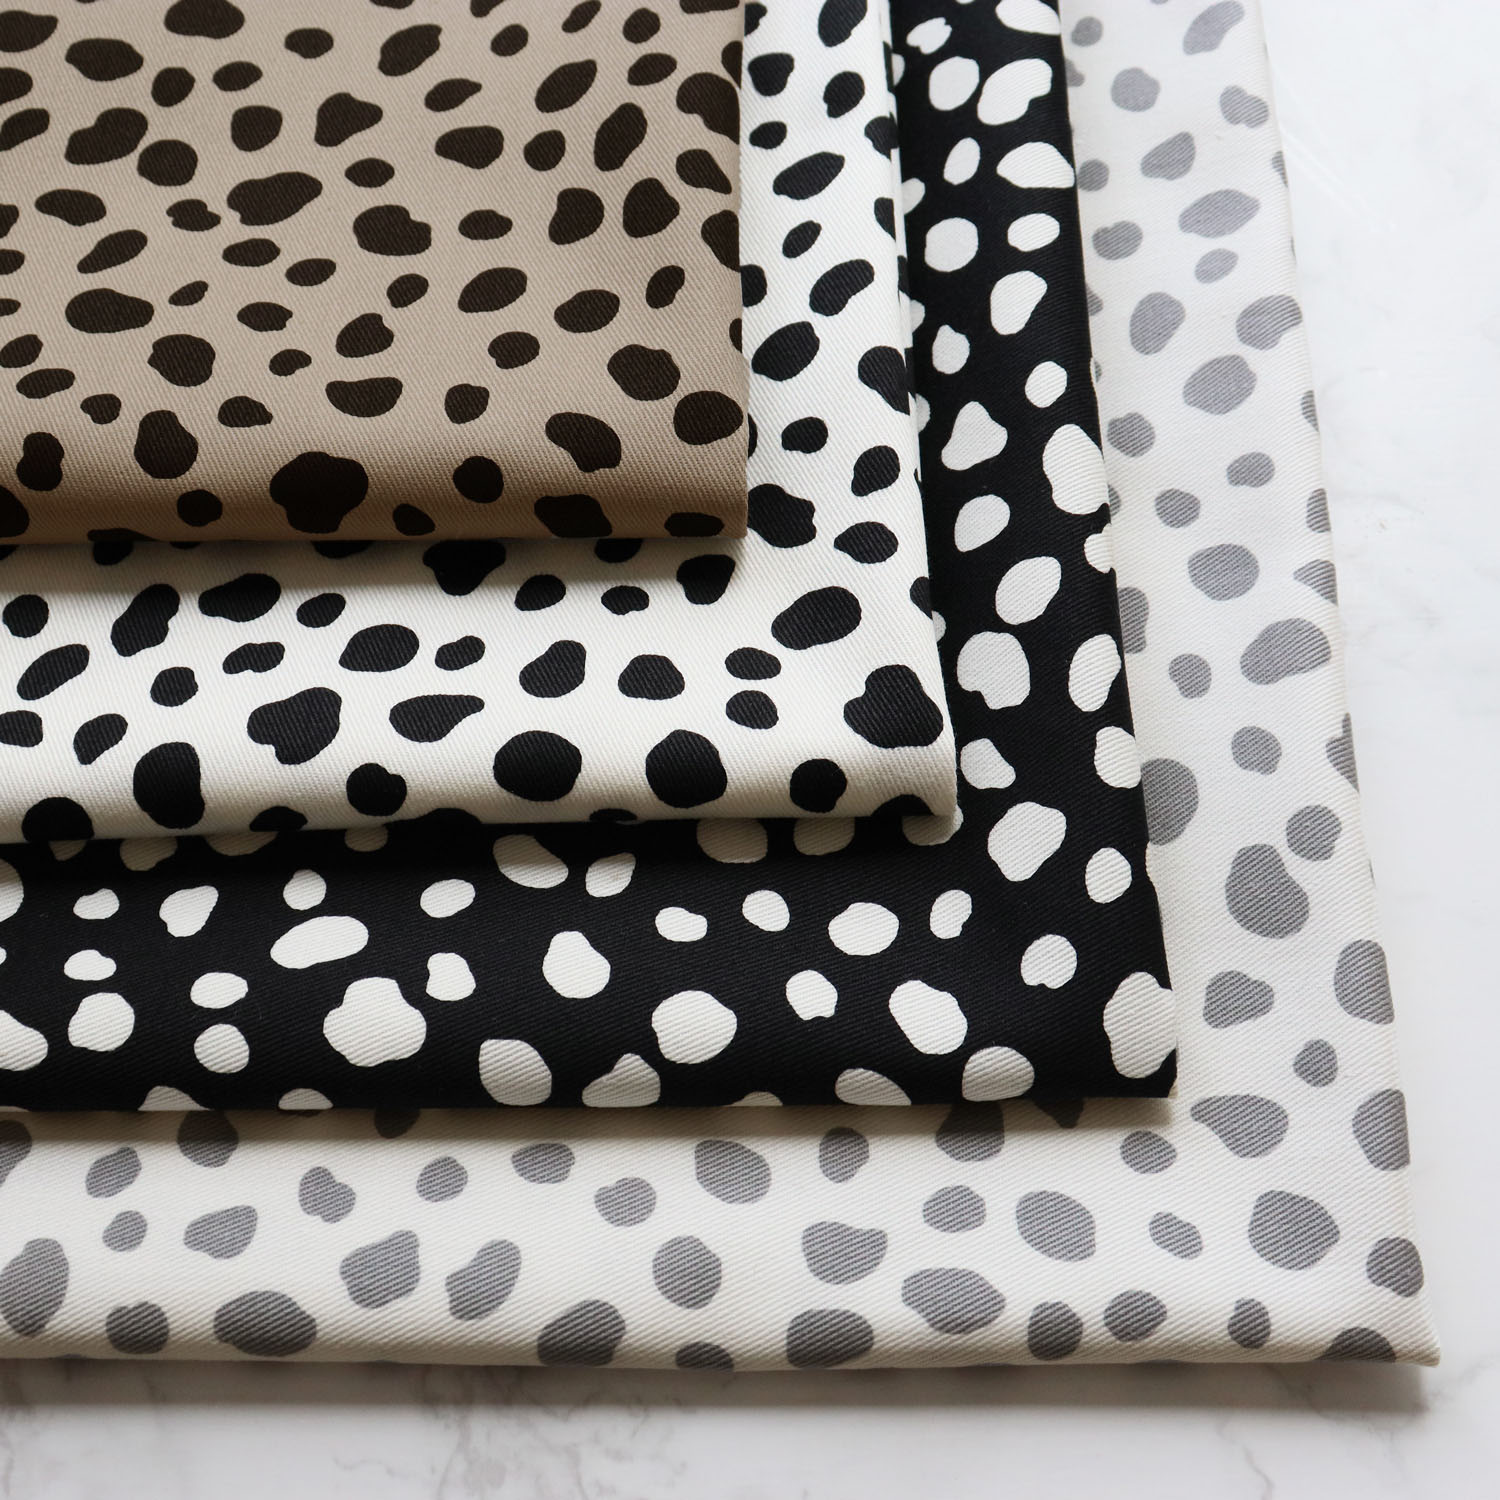 ■IBK7070R-10 Twill fabric Dalmatian pattern Raw material approx. 12m (roll)